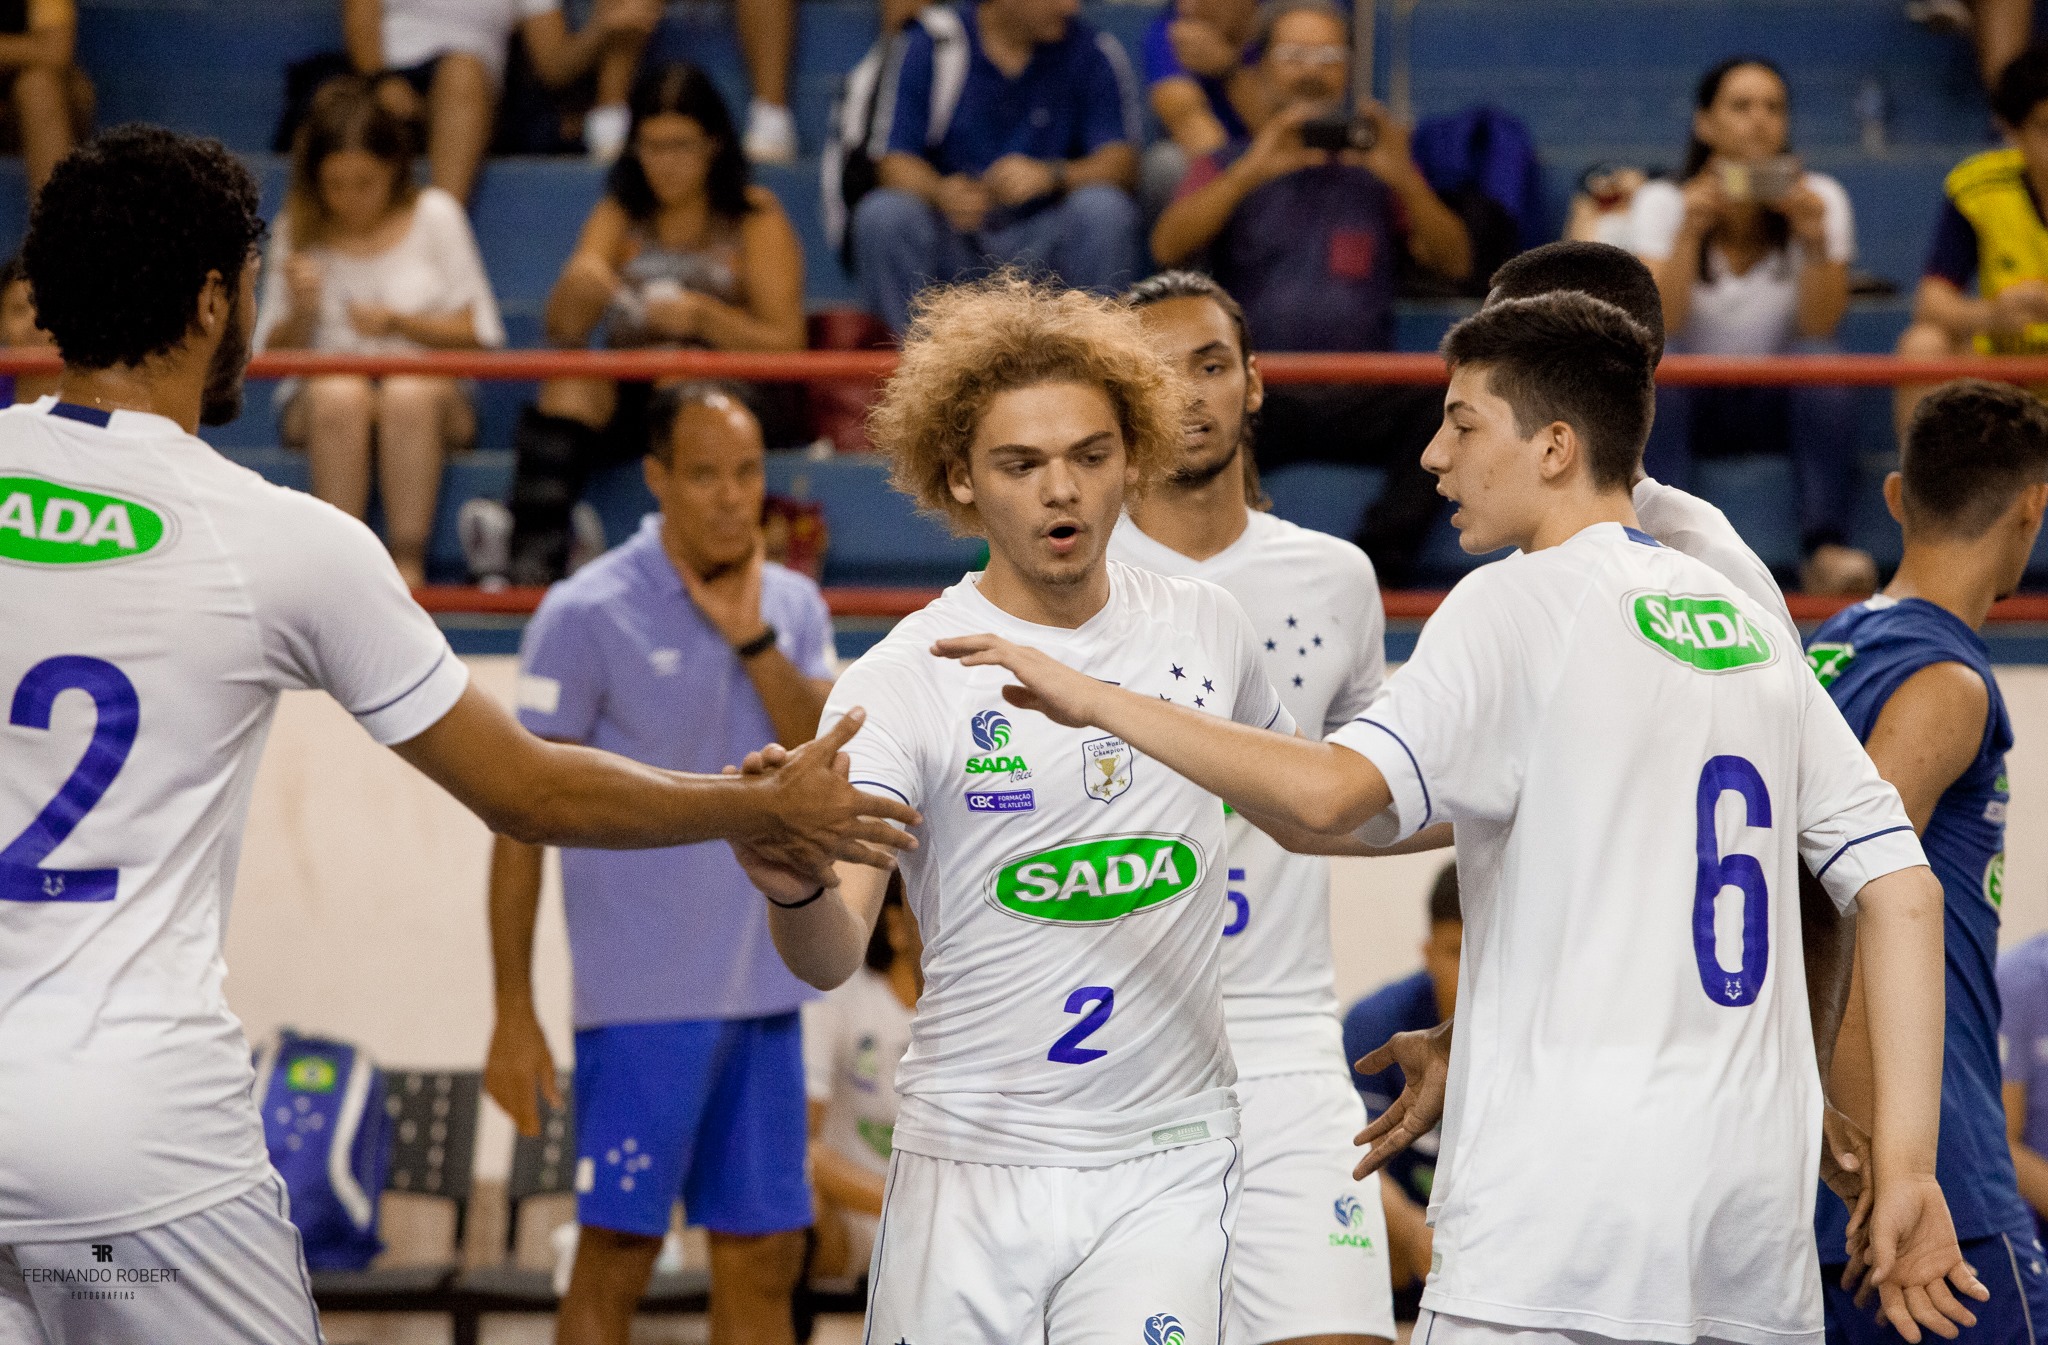 Clássico entre Minas Tênis Clube e Sada Cruzeiro irá decidir o título